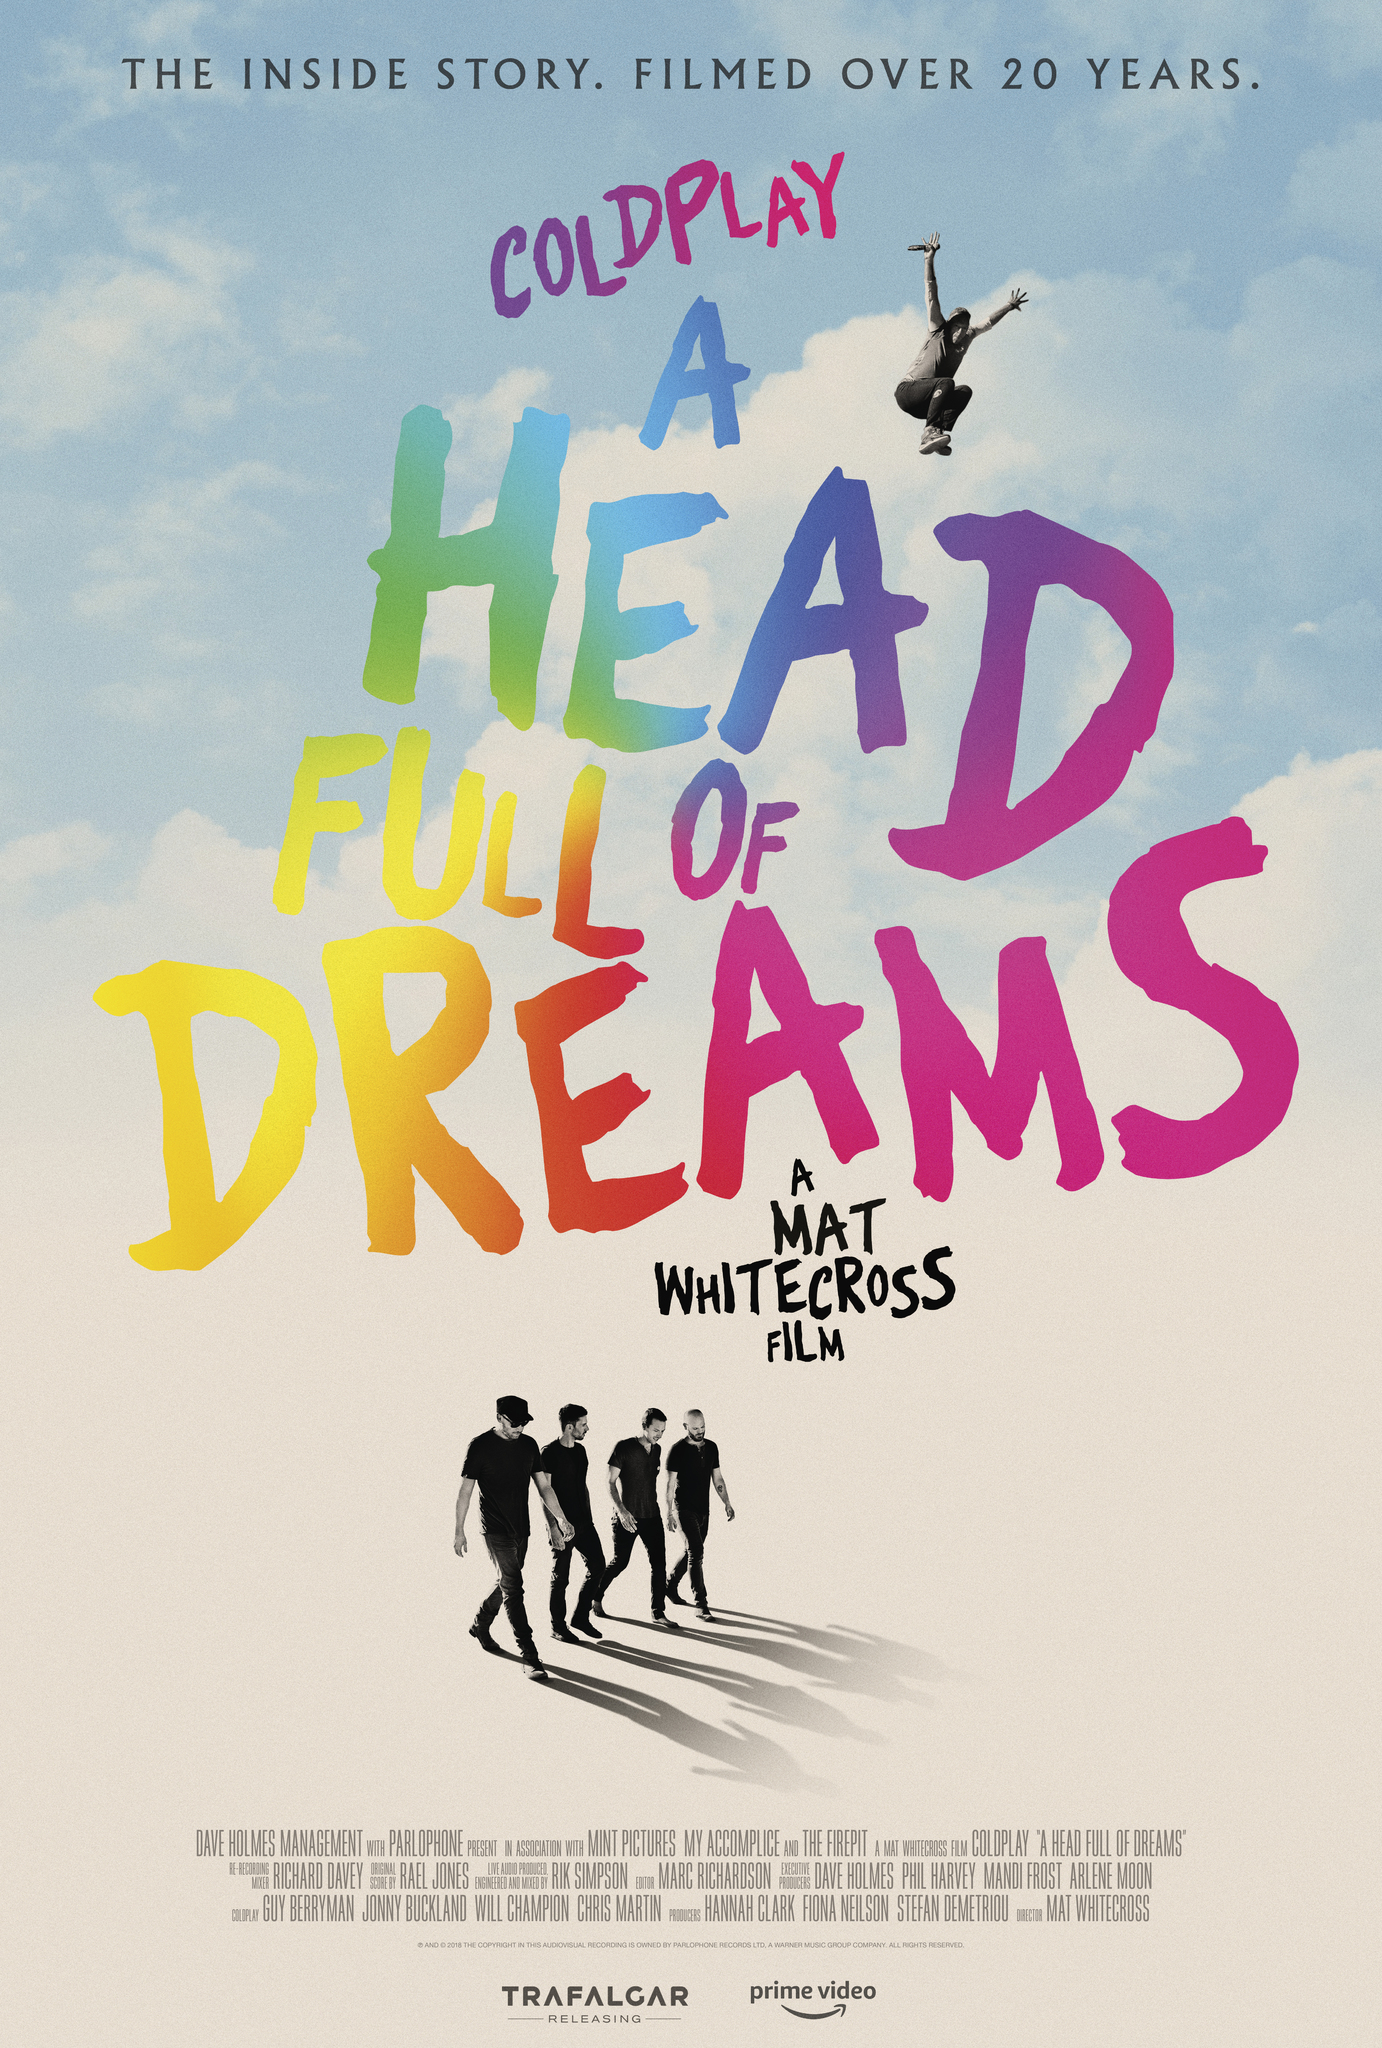 ดูหนังออนไลน์ Coldplay A Head Full of Dreams (2018) โคลด์เพลย์ อะเฮดฟูลออฟดรีมส์ หนังมาสเตอร์ หนังเต็มเรื่อง ดูหนังฟรีออนไลน์ ดูหนังออนไลน์ หนังออนไลน์ ดูหนังใหม่ หนังพากย์ไทย หนังซับไทย ดูฟรีHD